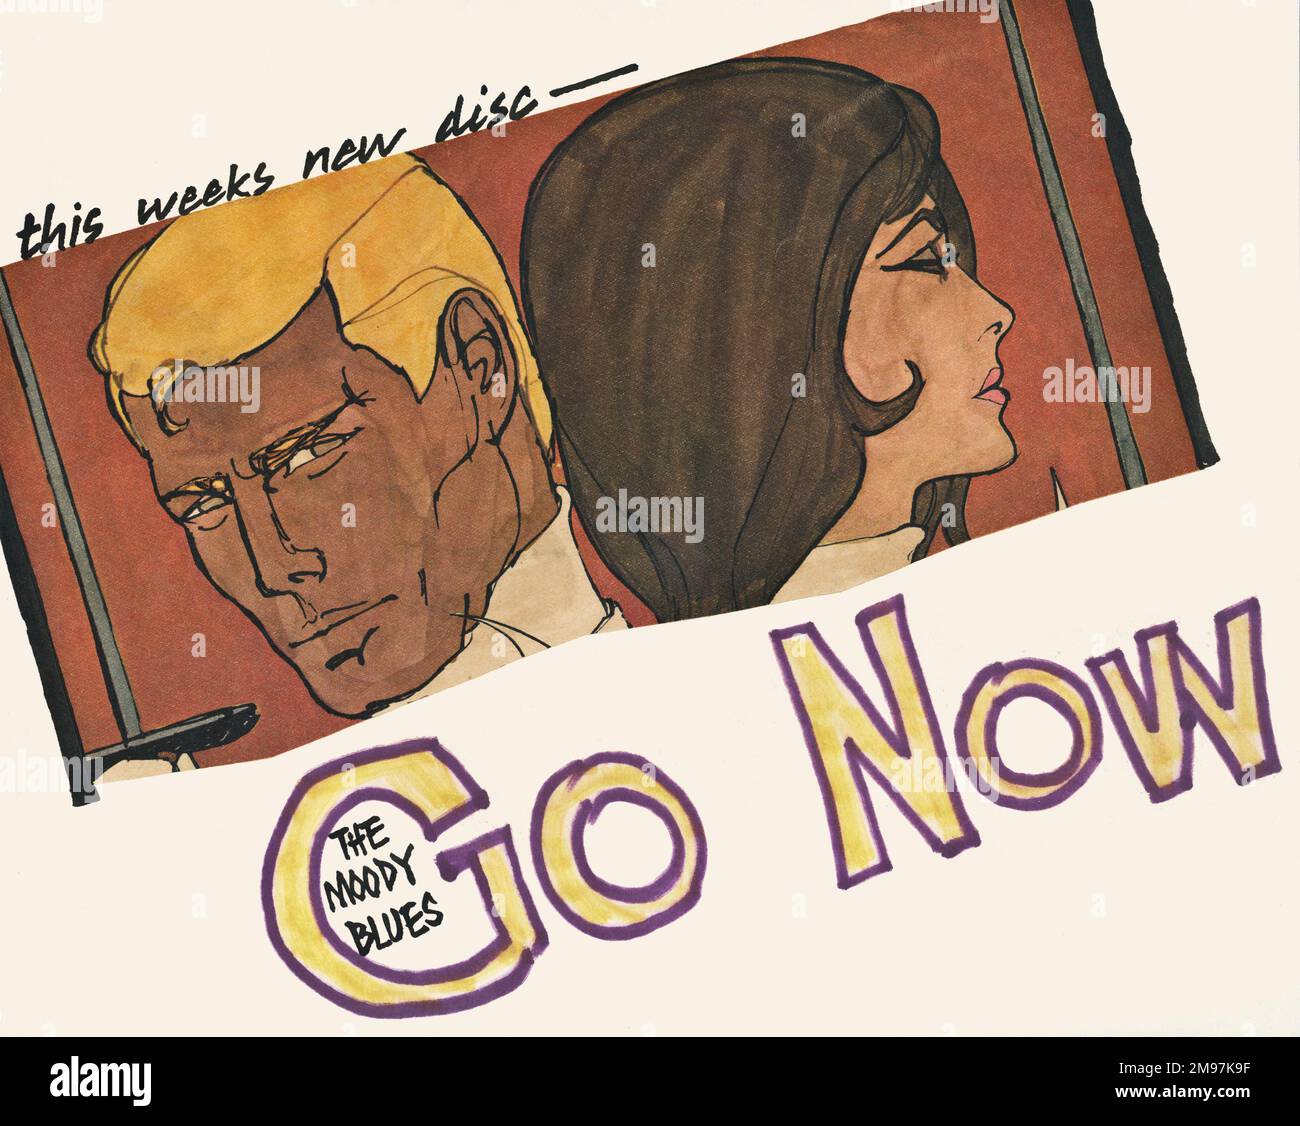 Poster in stile vignetta, pubblicizzando il nuovo disco di Moody Blues, Go Now. Rilasciato alla fine del 1964, ha raggiunto il vertice delle classifiche alla fine di gennaio 1965. Foto Stock